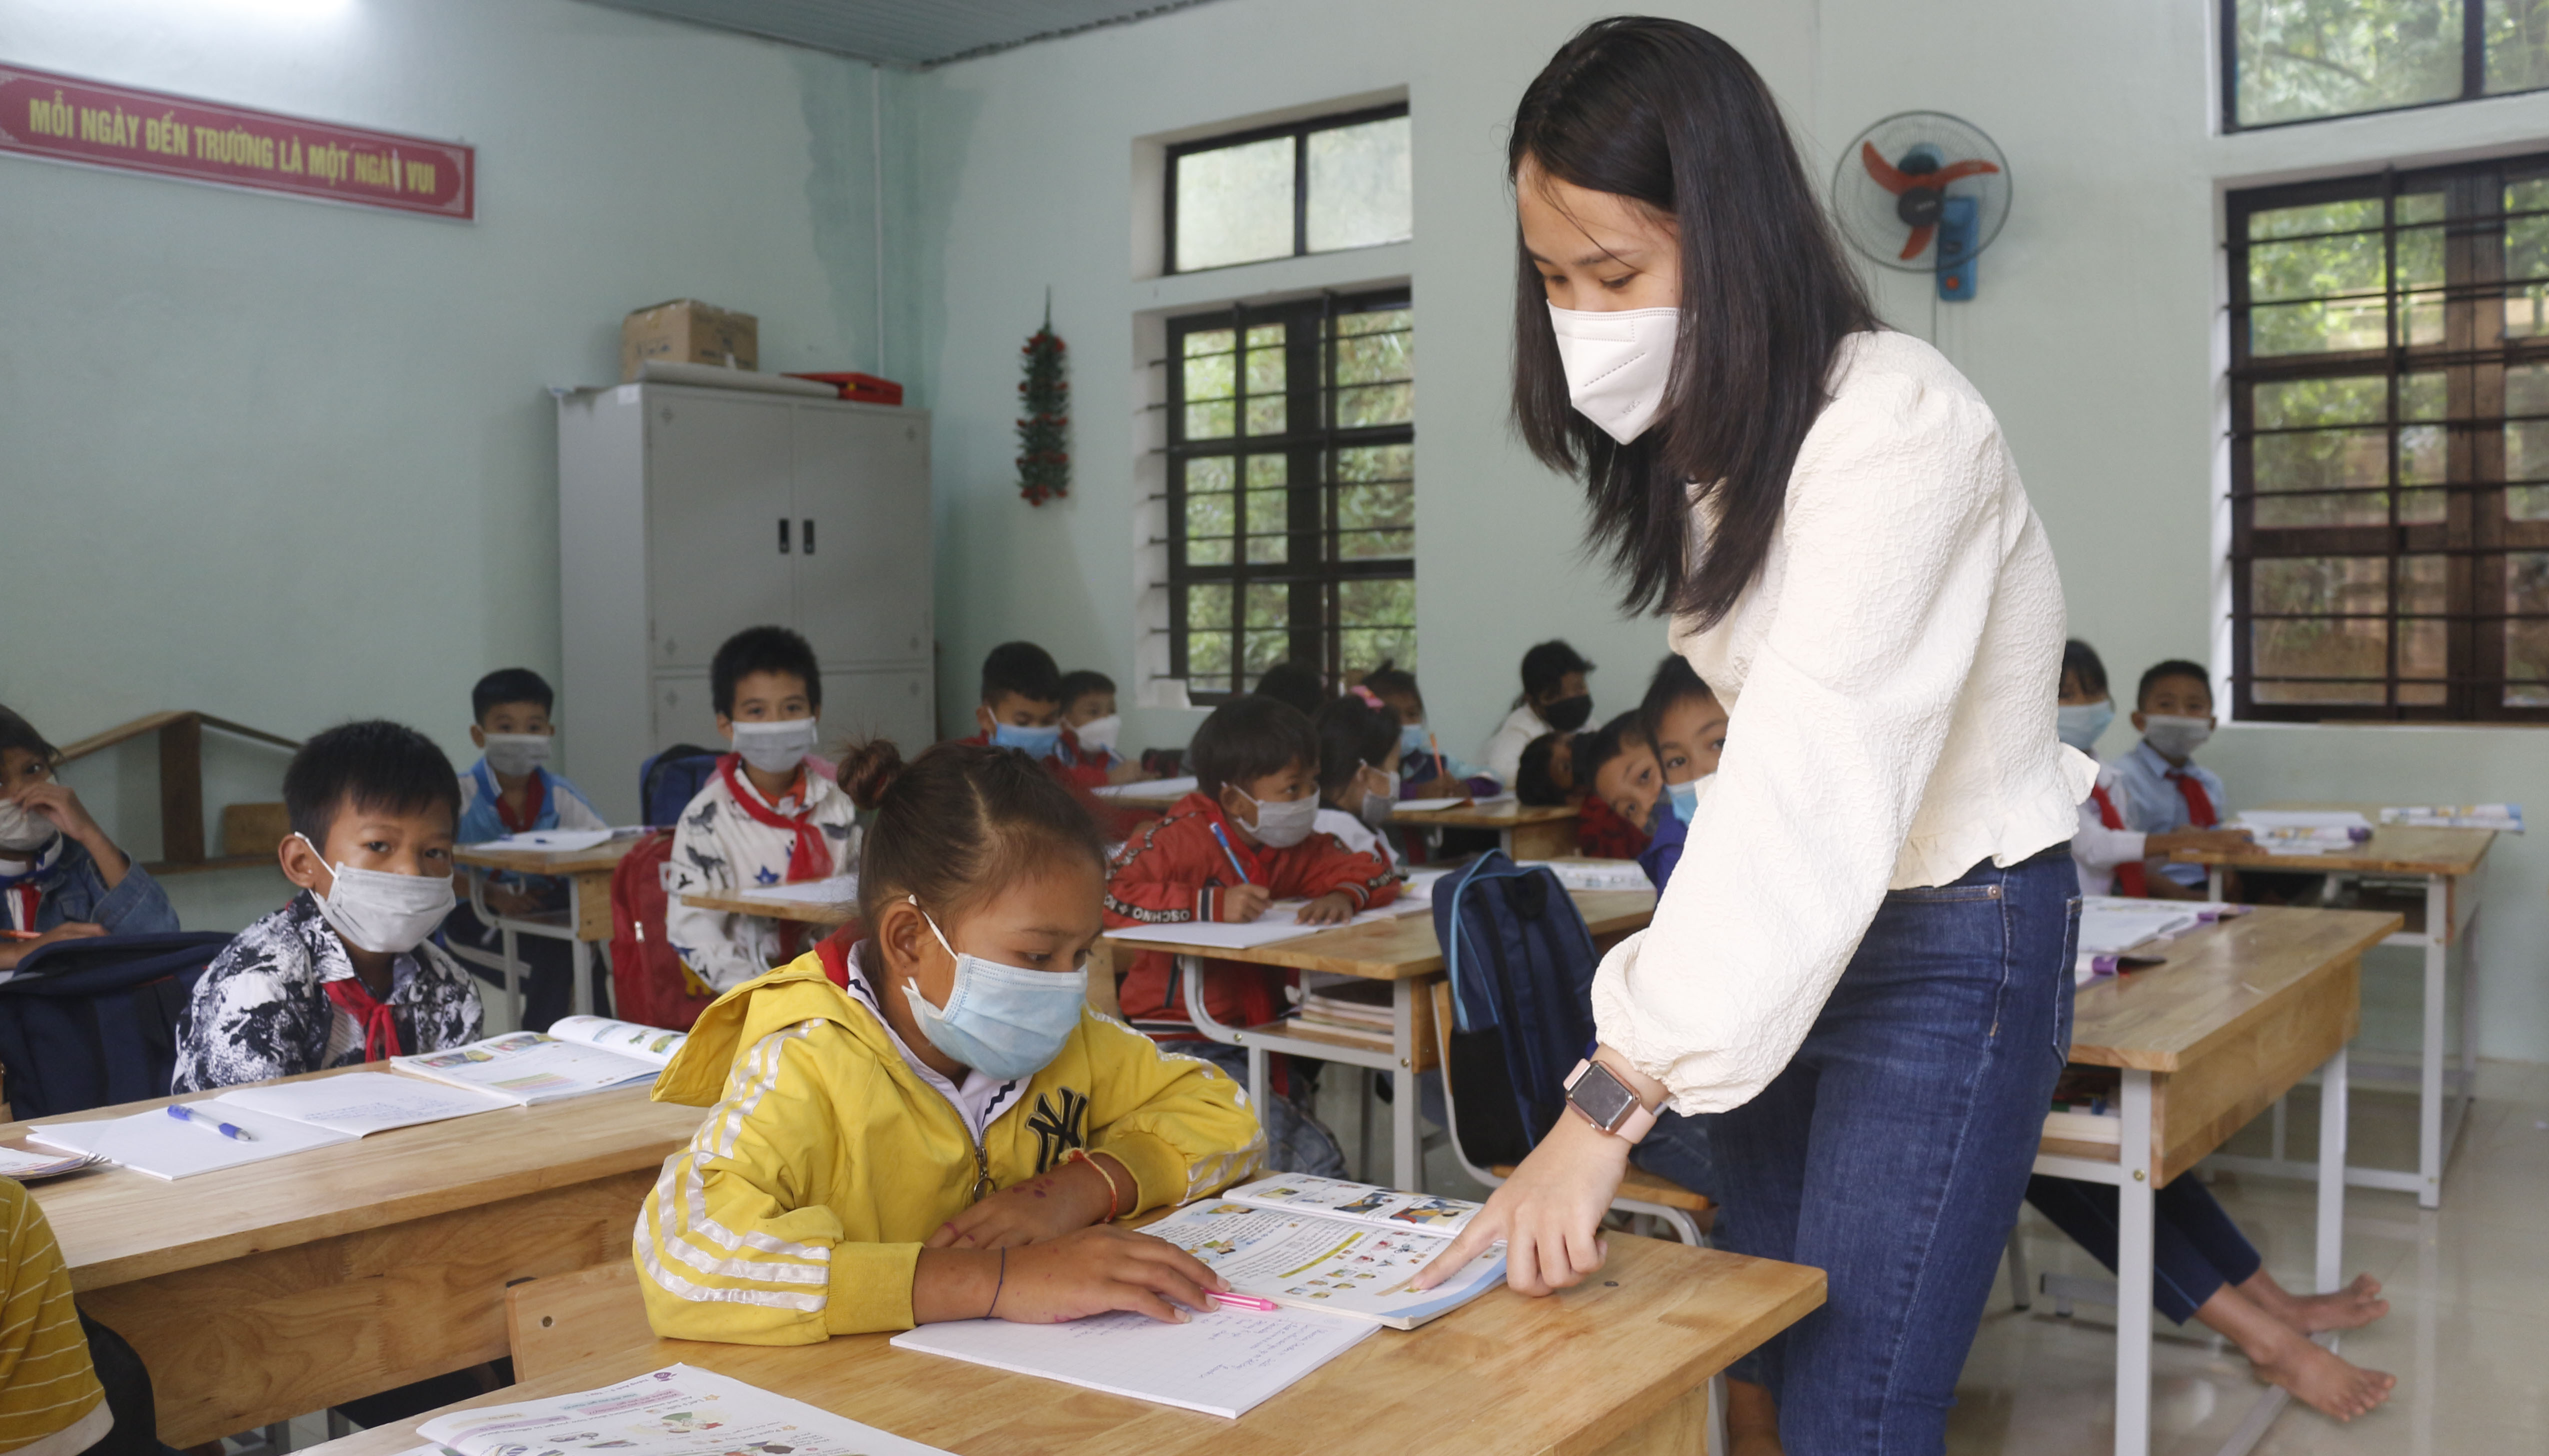 Tất cả các trường tiểu học, THCS trên địa bàn huyện Tuyên Hóa đã tổ chức dạy học trực tiếp và bảo đảm công tác phòng chống dịch.